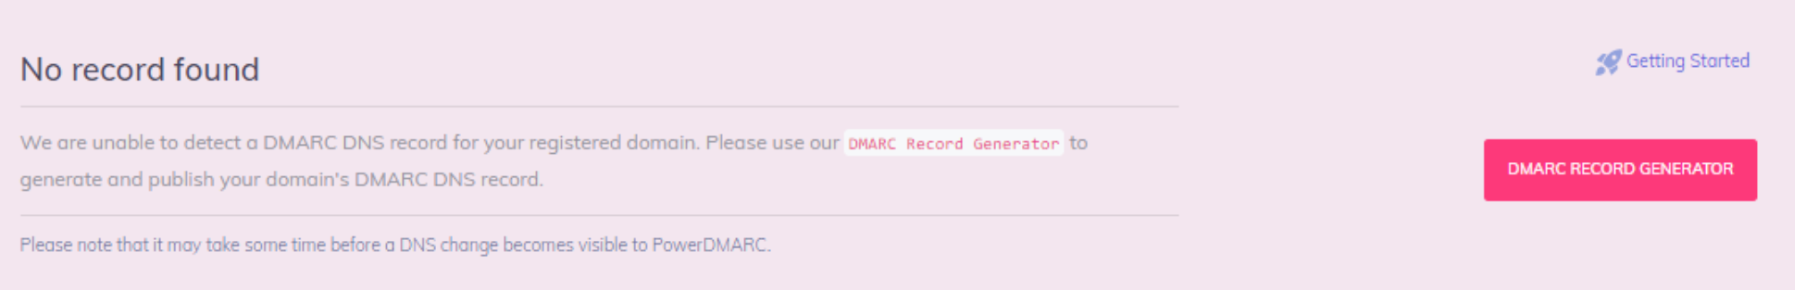 geen DMARC record gevonden